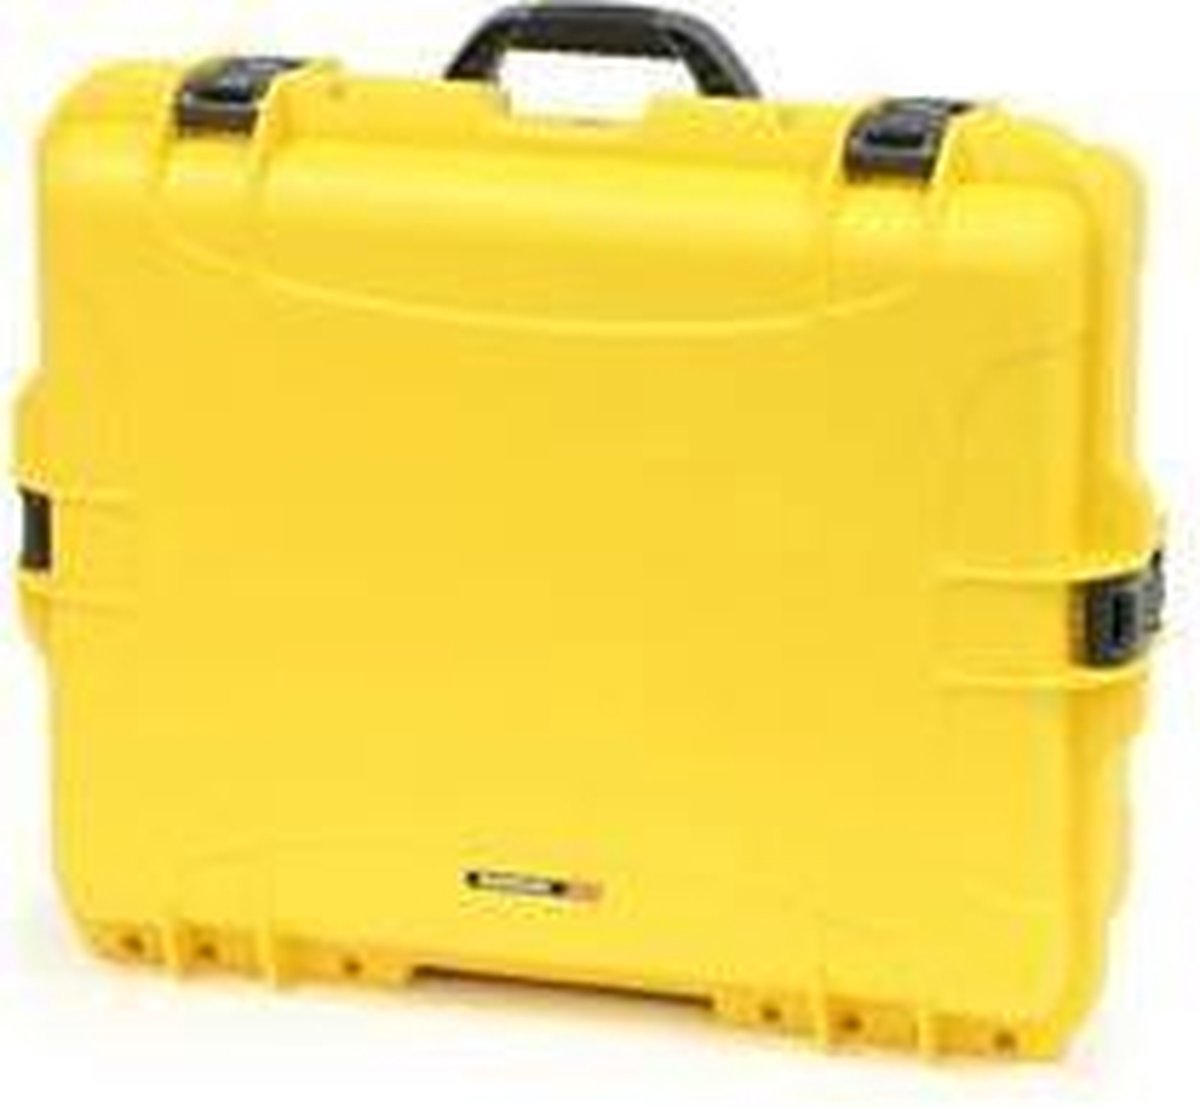 Nanuk 945 Case - Yellow